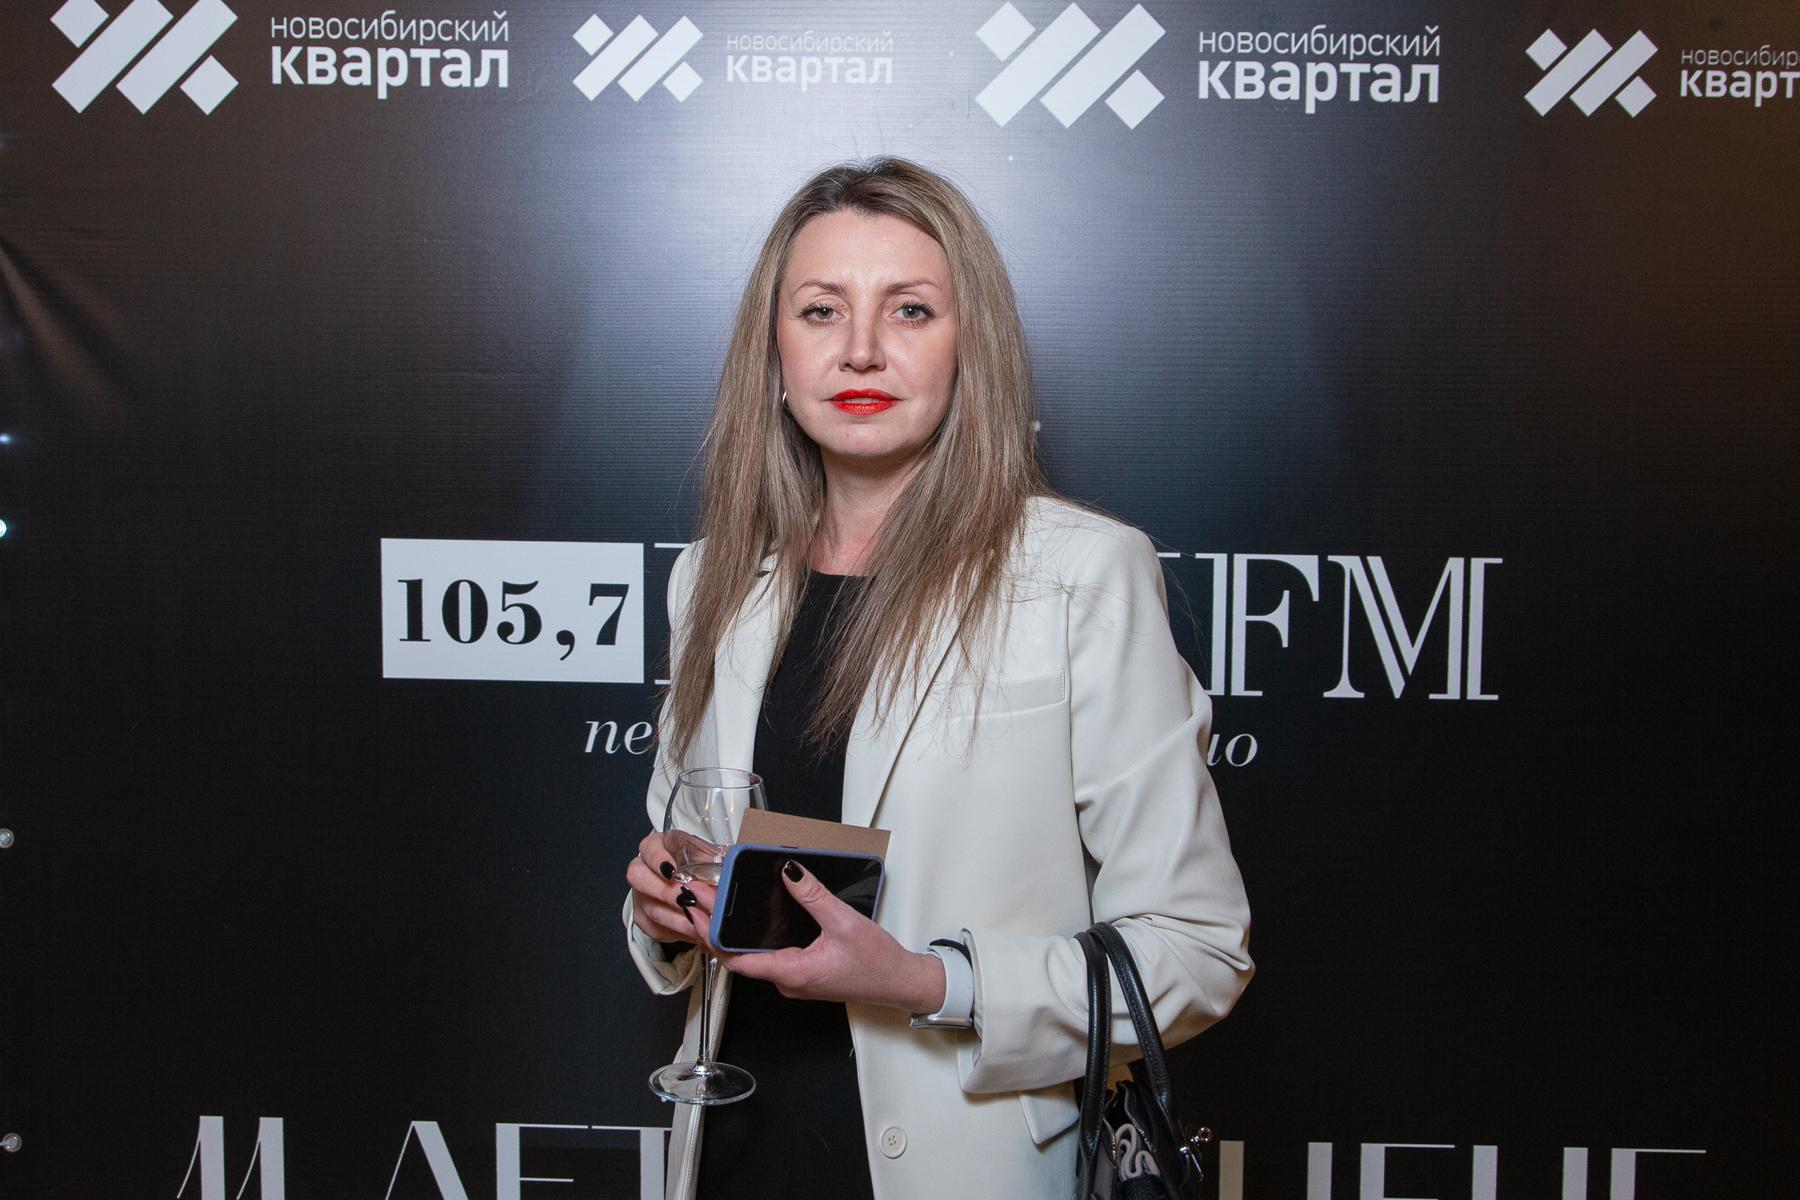 Фото Радиостанция Business FM в Новосибирске отметила 11 лет в эфире 30